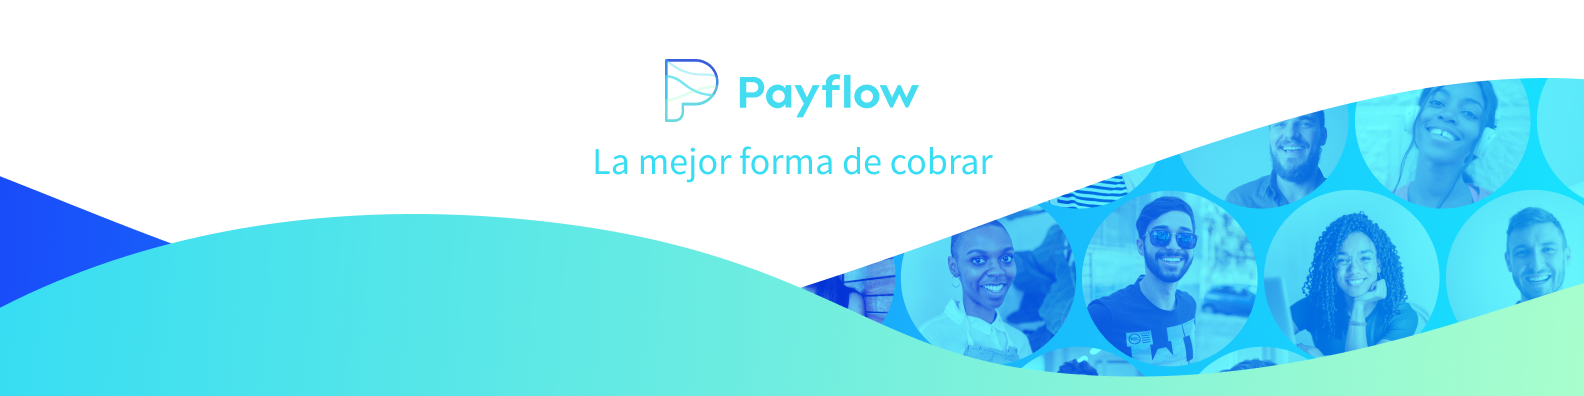 payflow